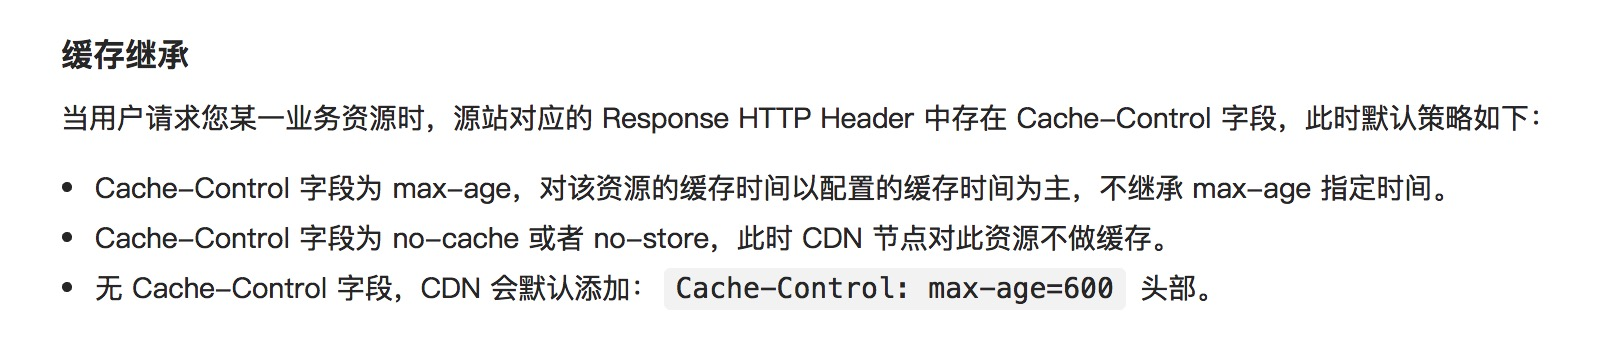 http-cdn-cloud-tencent-cache